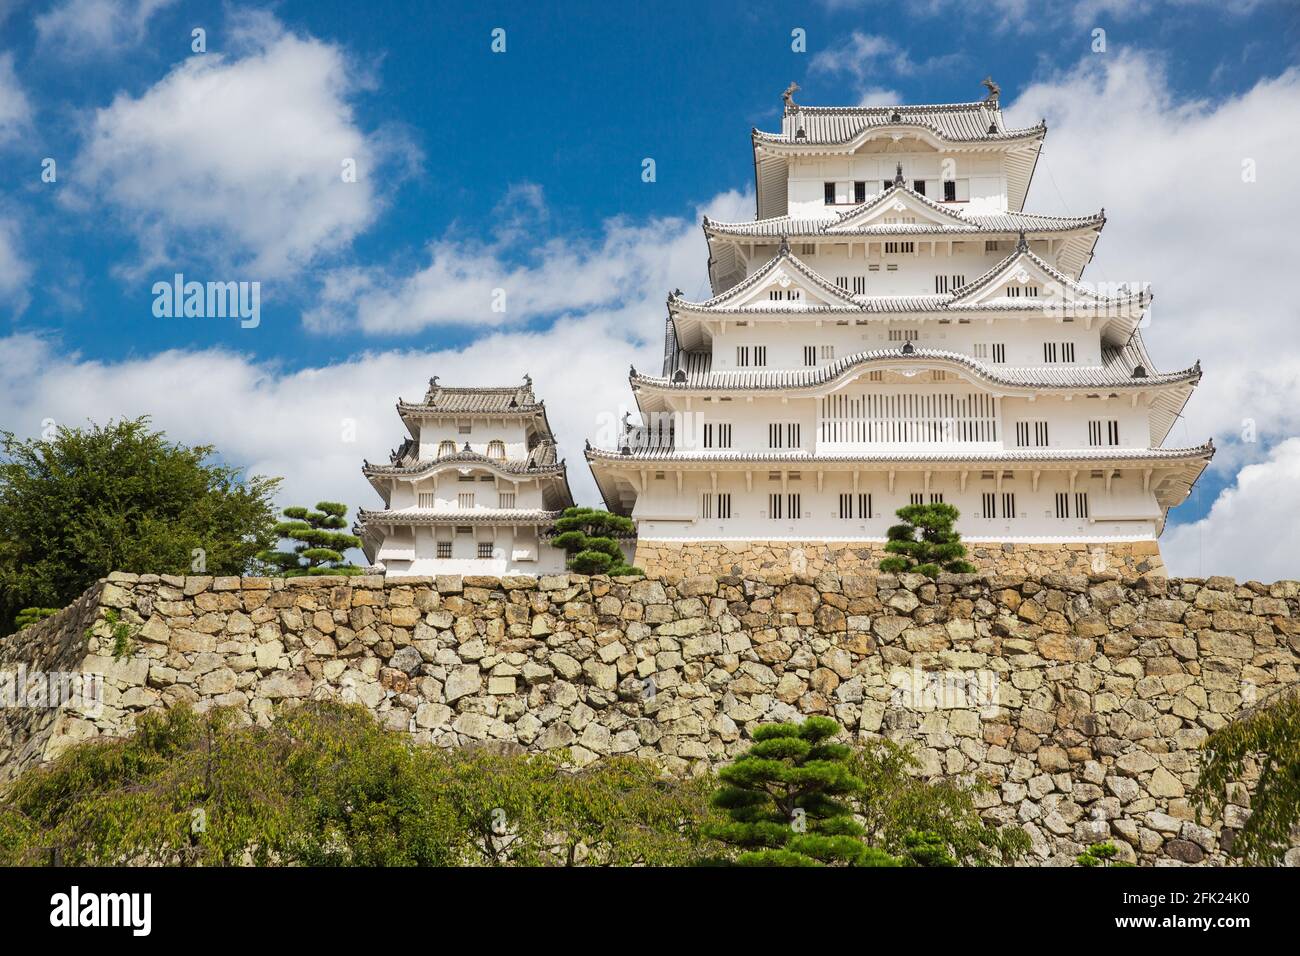 Il castello di Himeji, noto anche come Castello dell'Erone Bianco, Shirasagijo, è un castello giapponese situato sulla cima di una collina nella città di Himeji, nella prefettura di Hyogo, in Giappone Foto Stock